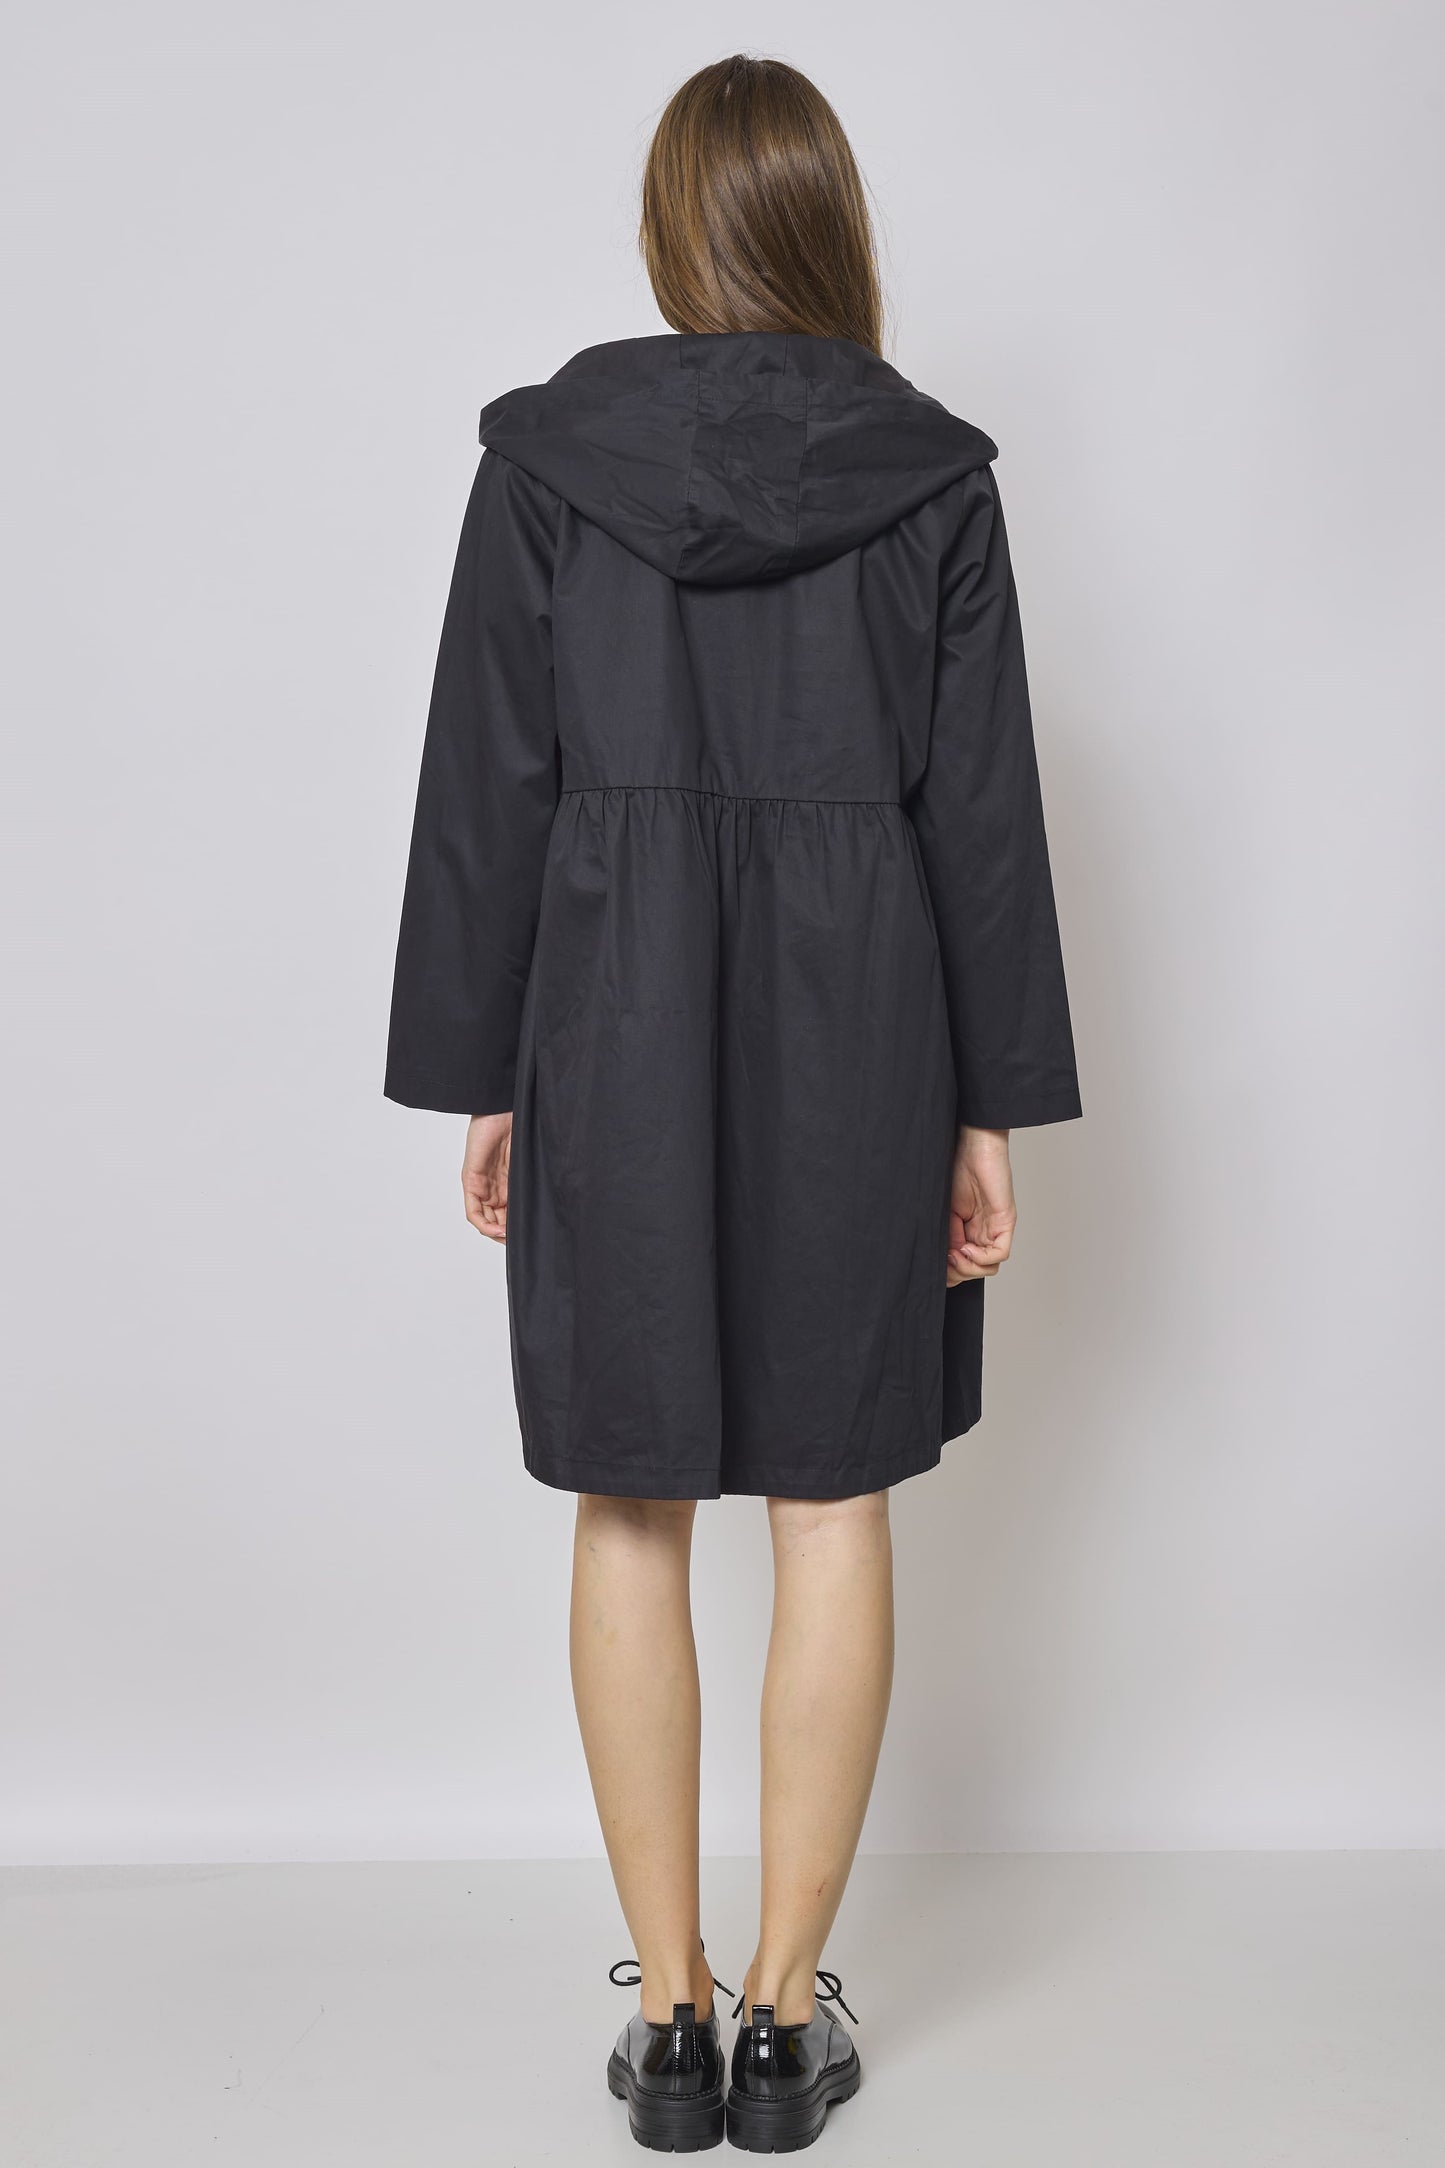 Women's hooded waterproof jacket